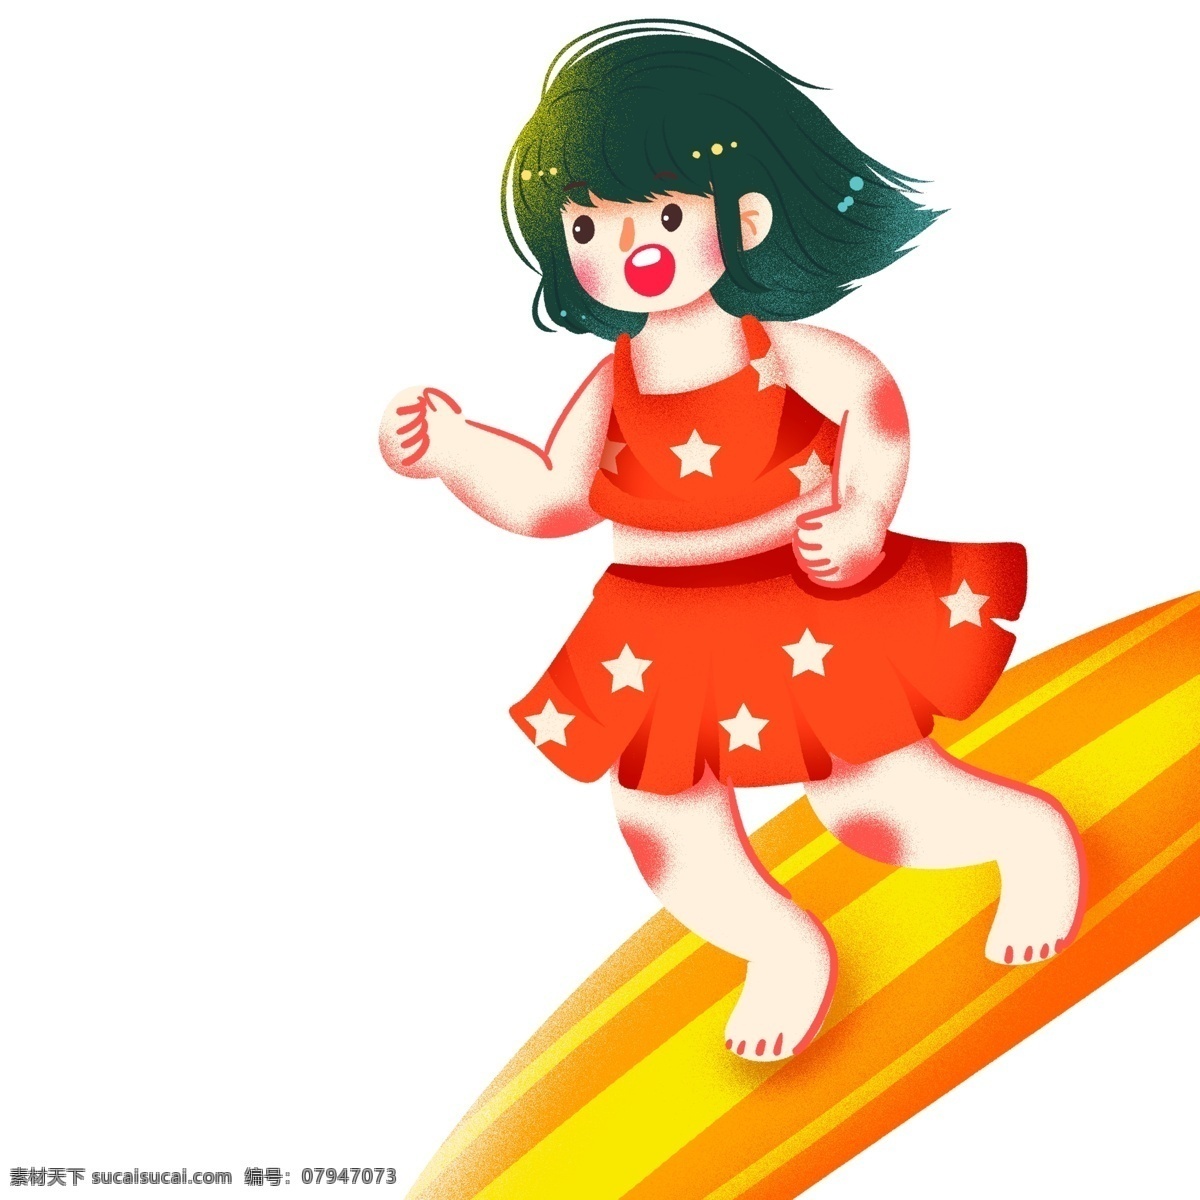 清新 手绘 一个 冲浪 女孩子 卡通 可爱 插画 人物 治愈系